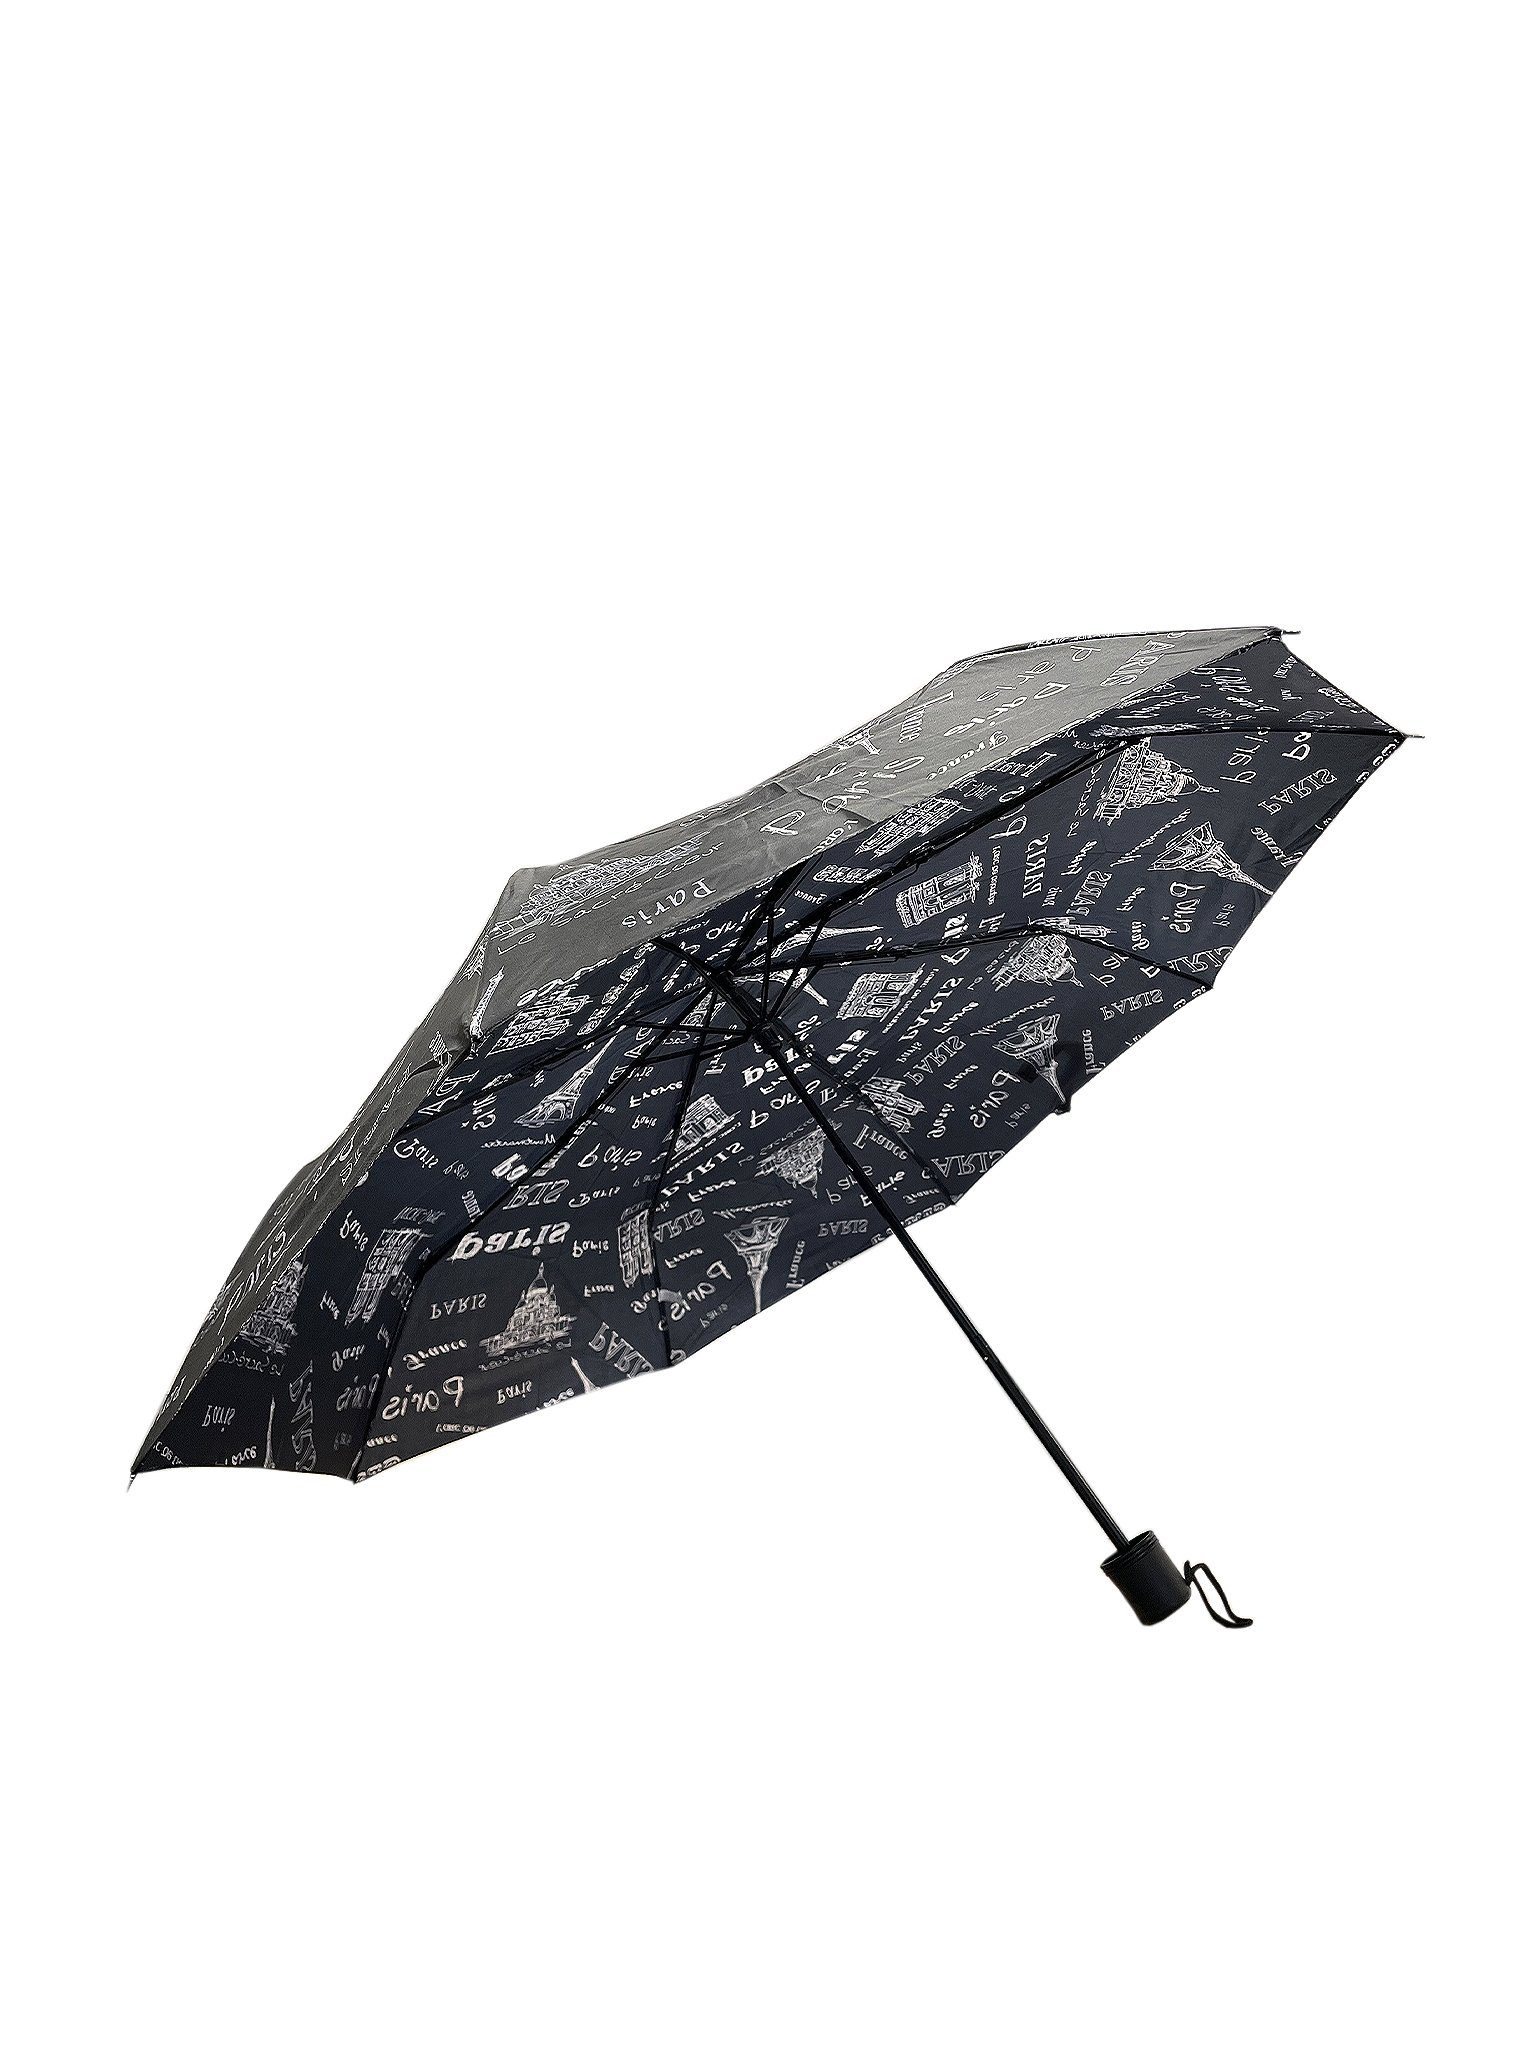 ANELY Taschenregenschirm Kleiner Regenschirm Paris Gemustert Taschenschirm, 6746 in Schwarz | Taschenschirme